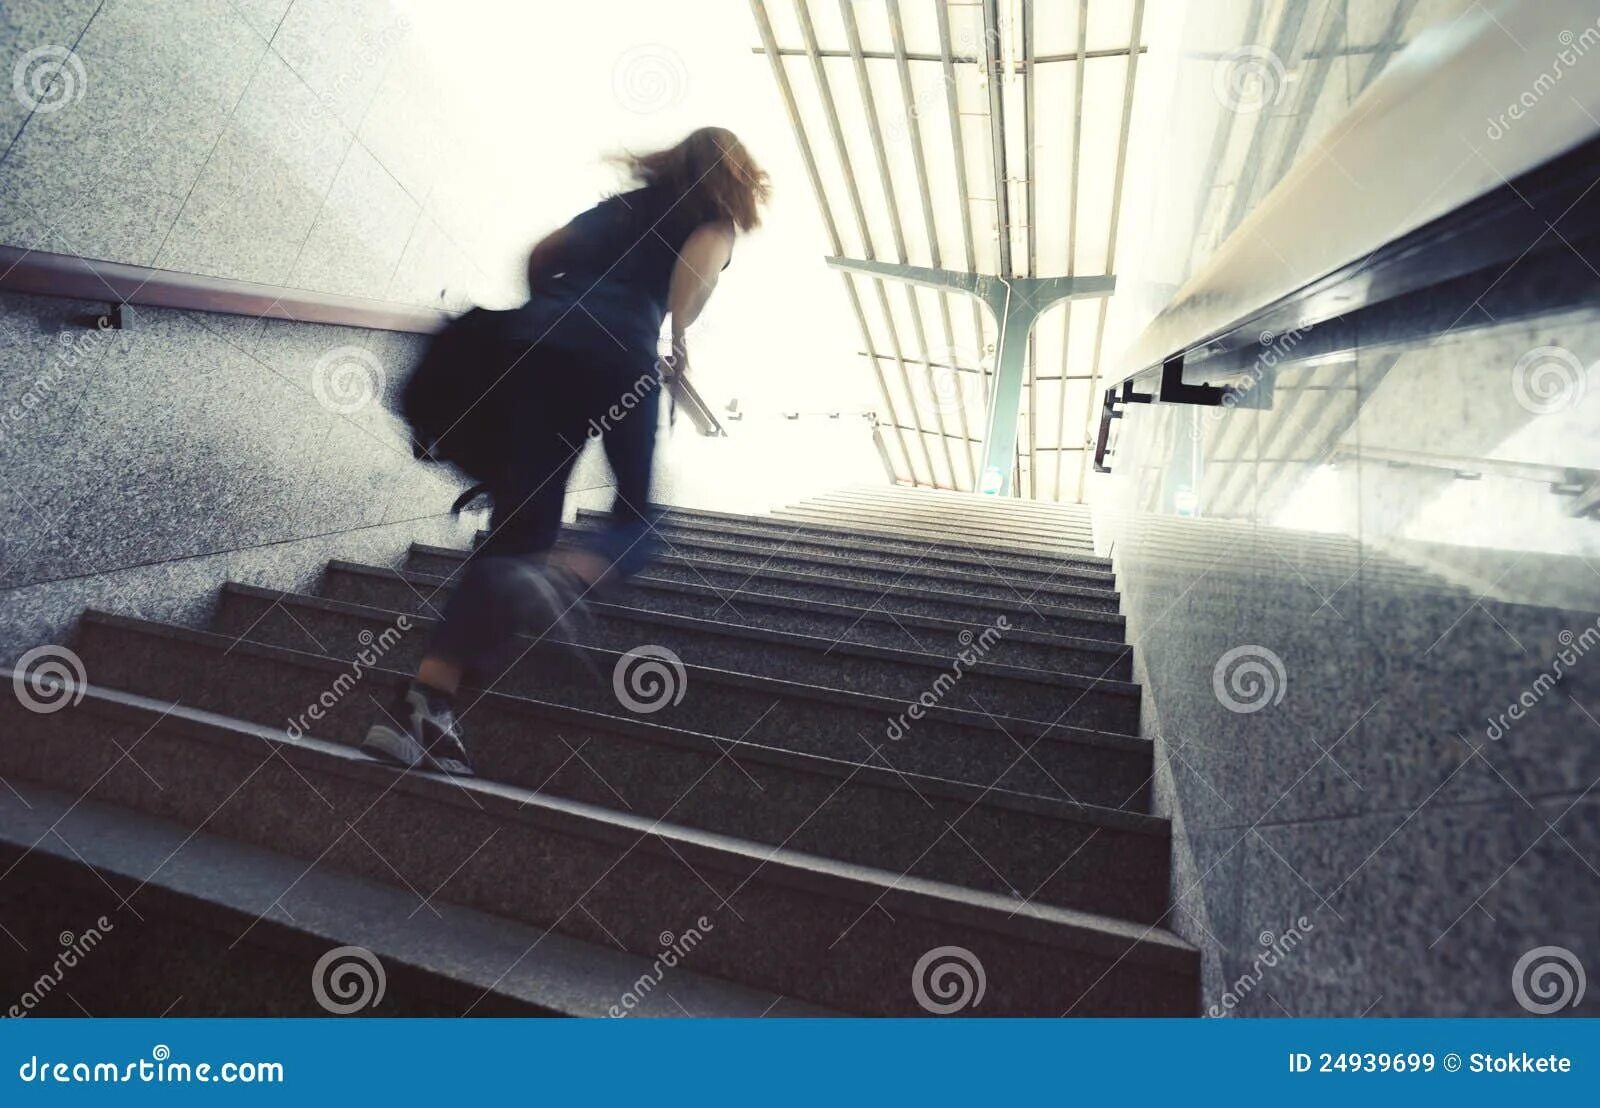 Подниматься по лестнице в подъезде. Девушка бежит по лестнице. Девушка убегает по лестнице. Девушка идет по лестнице вверх. Женщина на ступеньках здания.